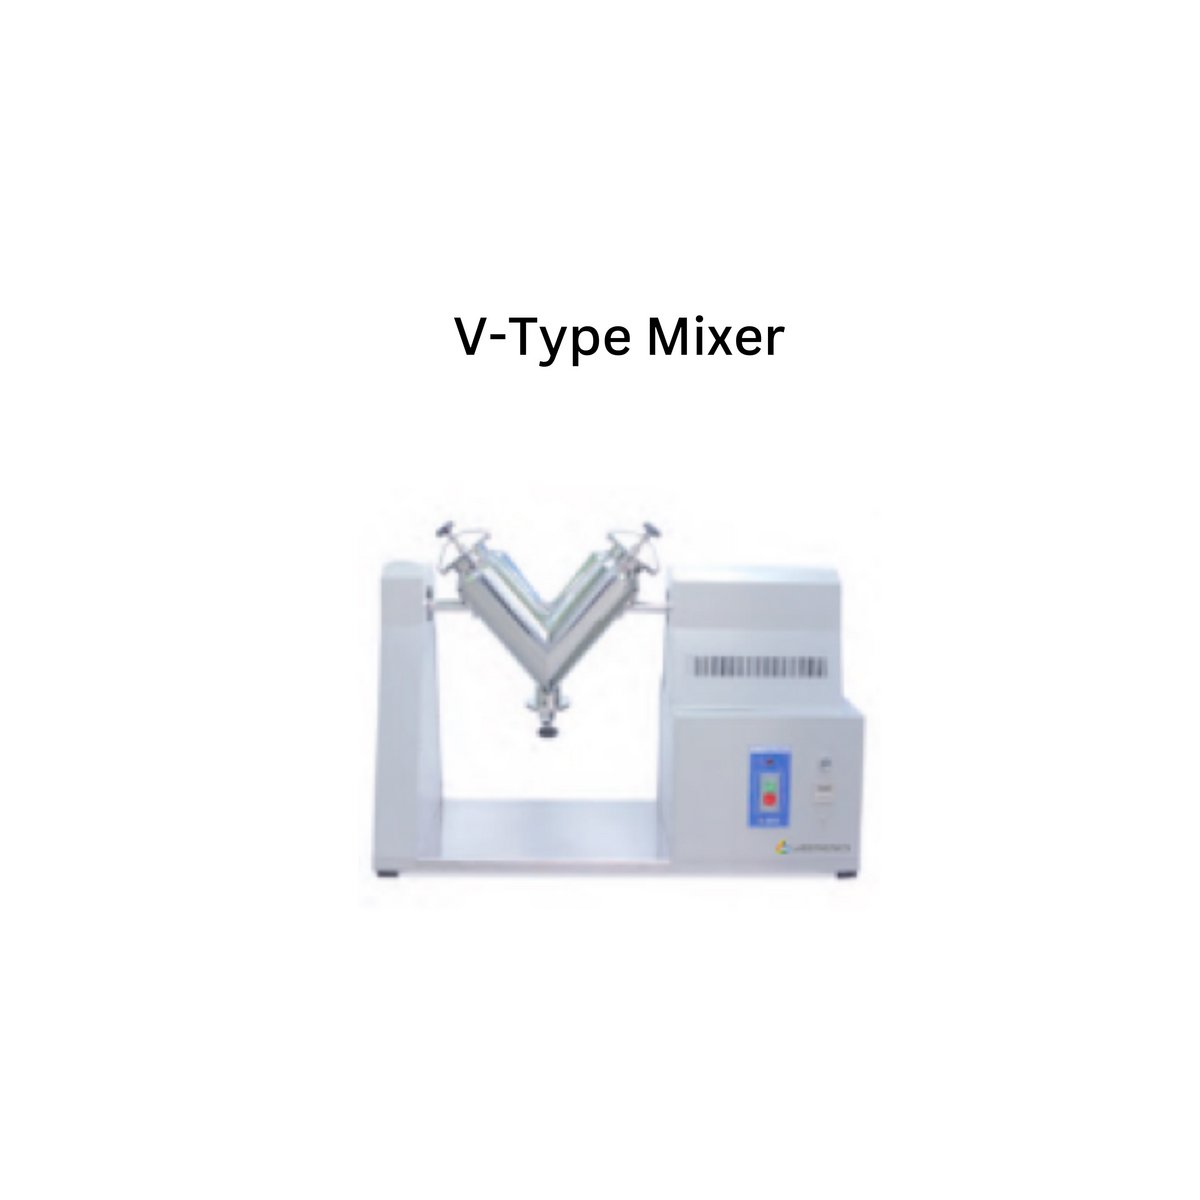 V-Type Mixer - Copy - Copy.jpg